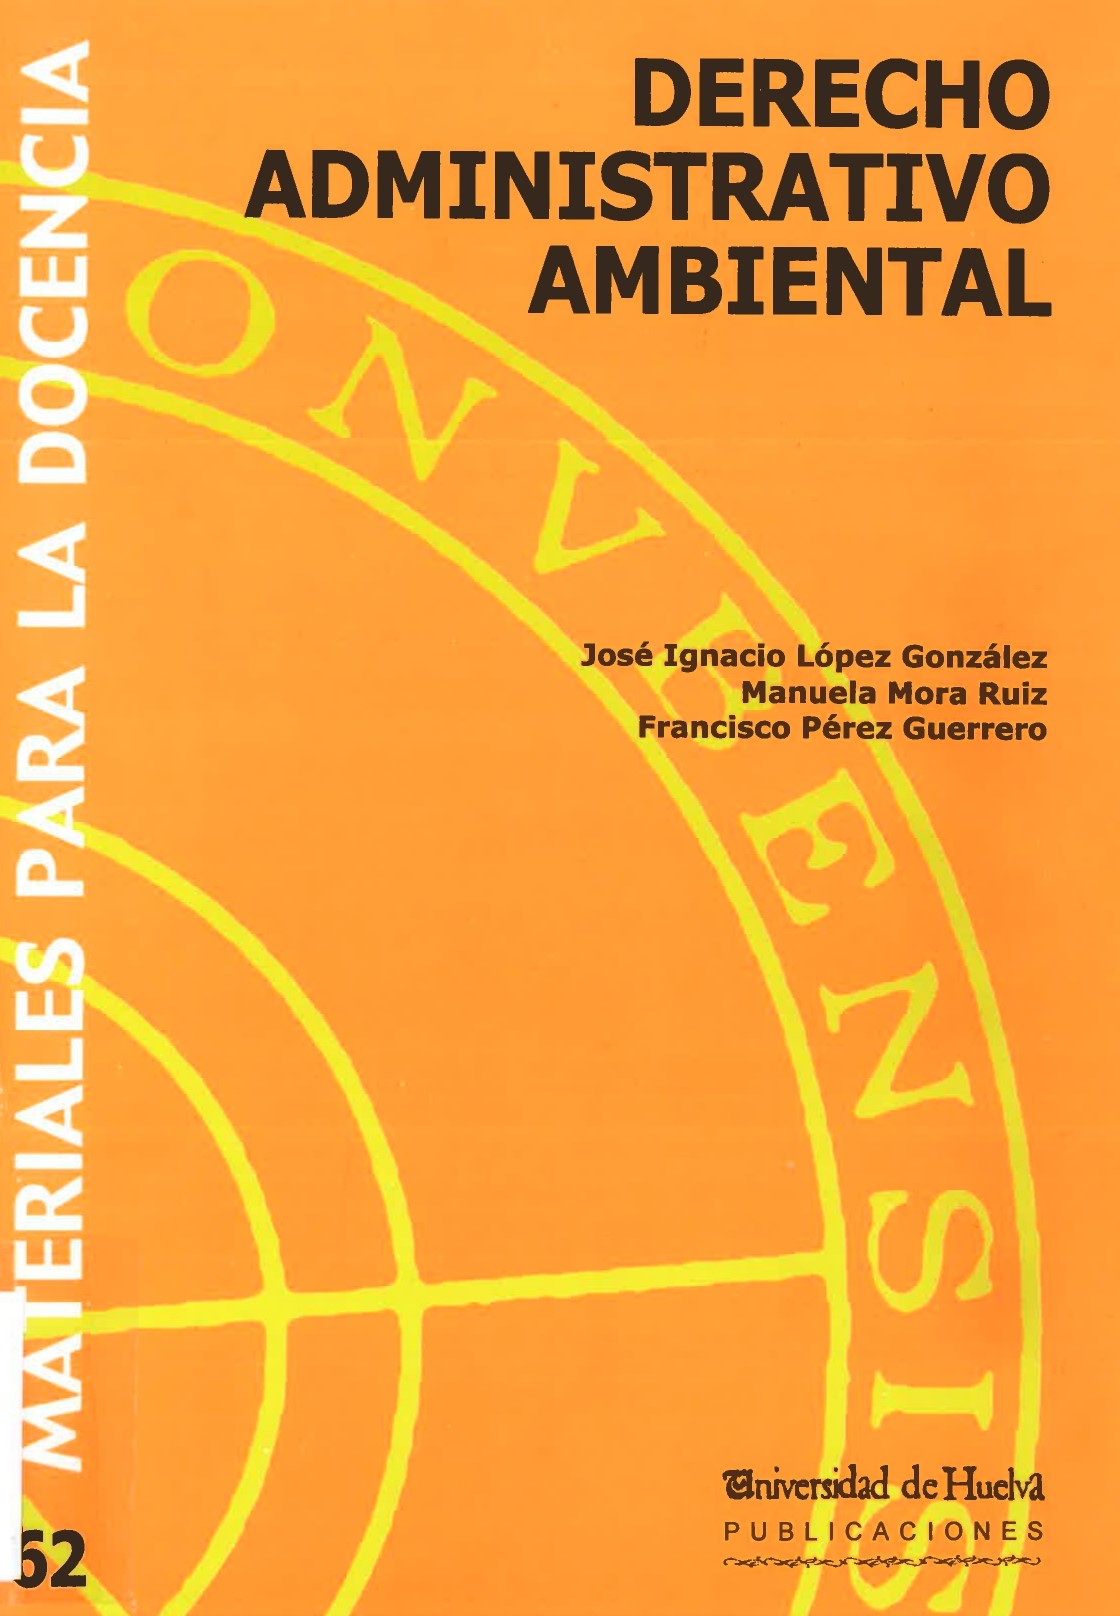 Imagen de portada del libro Derecho Administrativo Ambiental